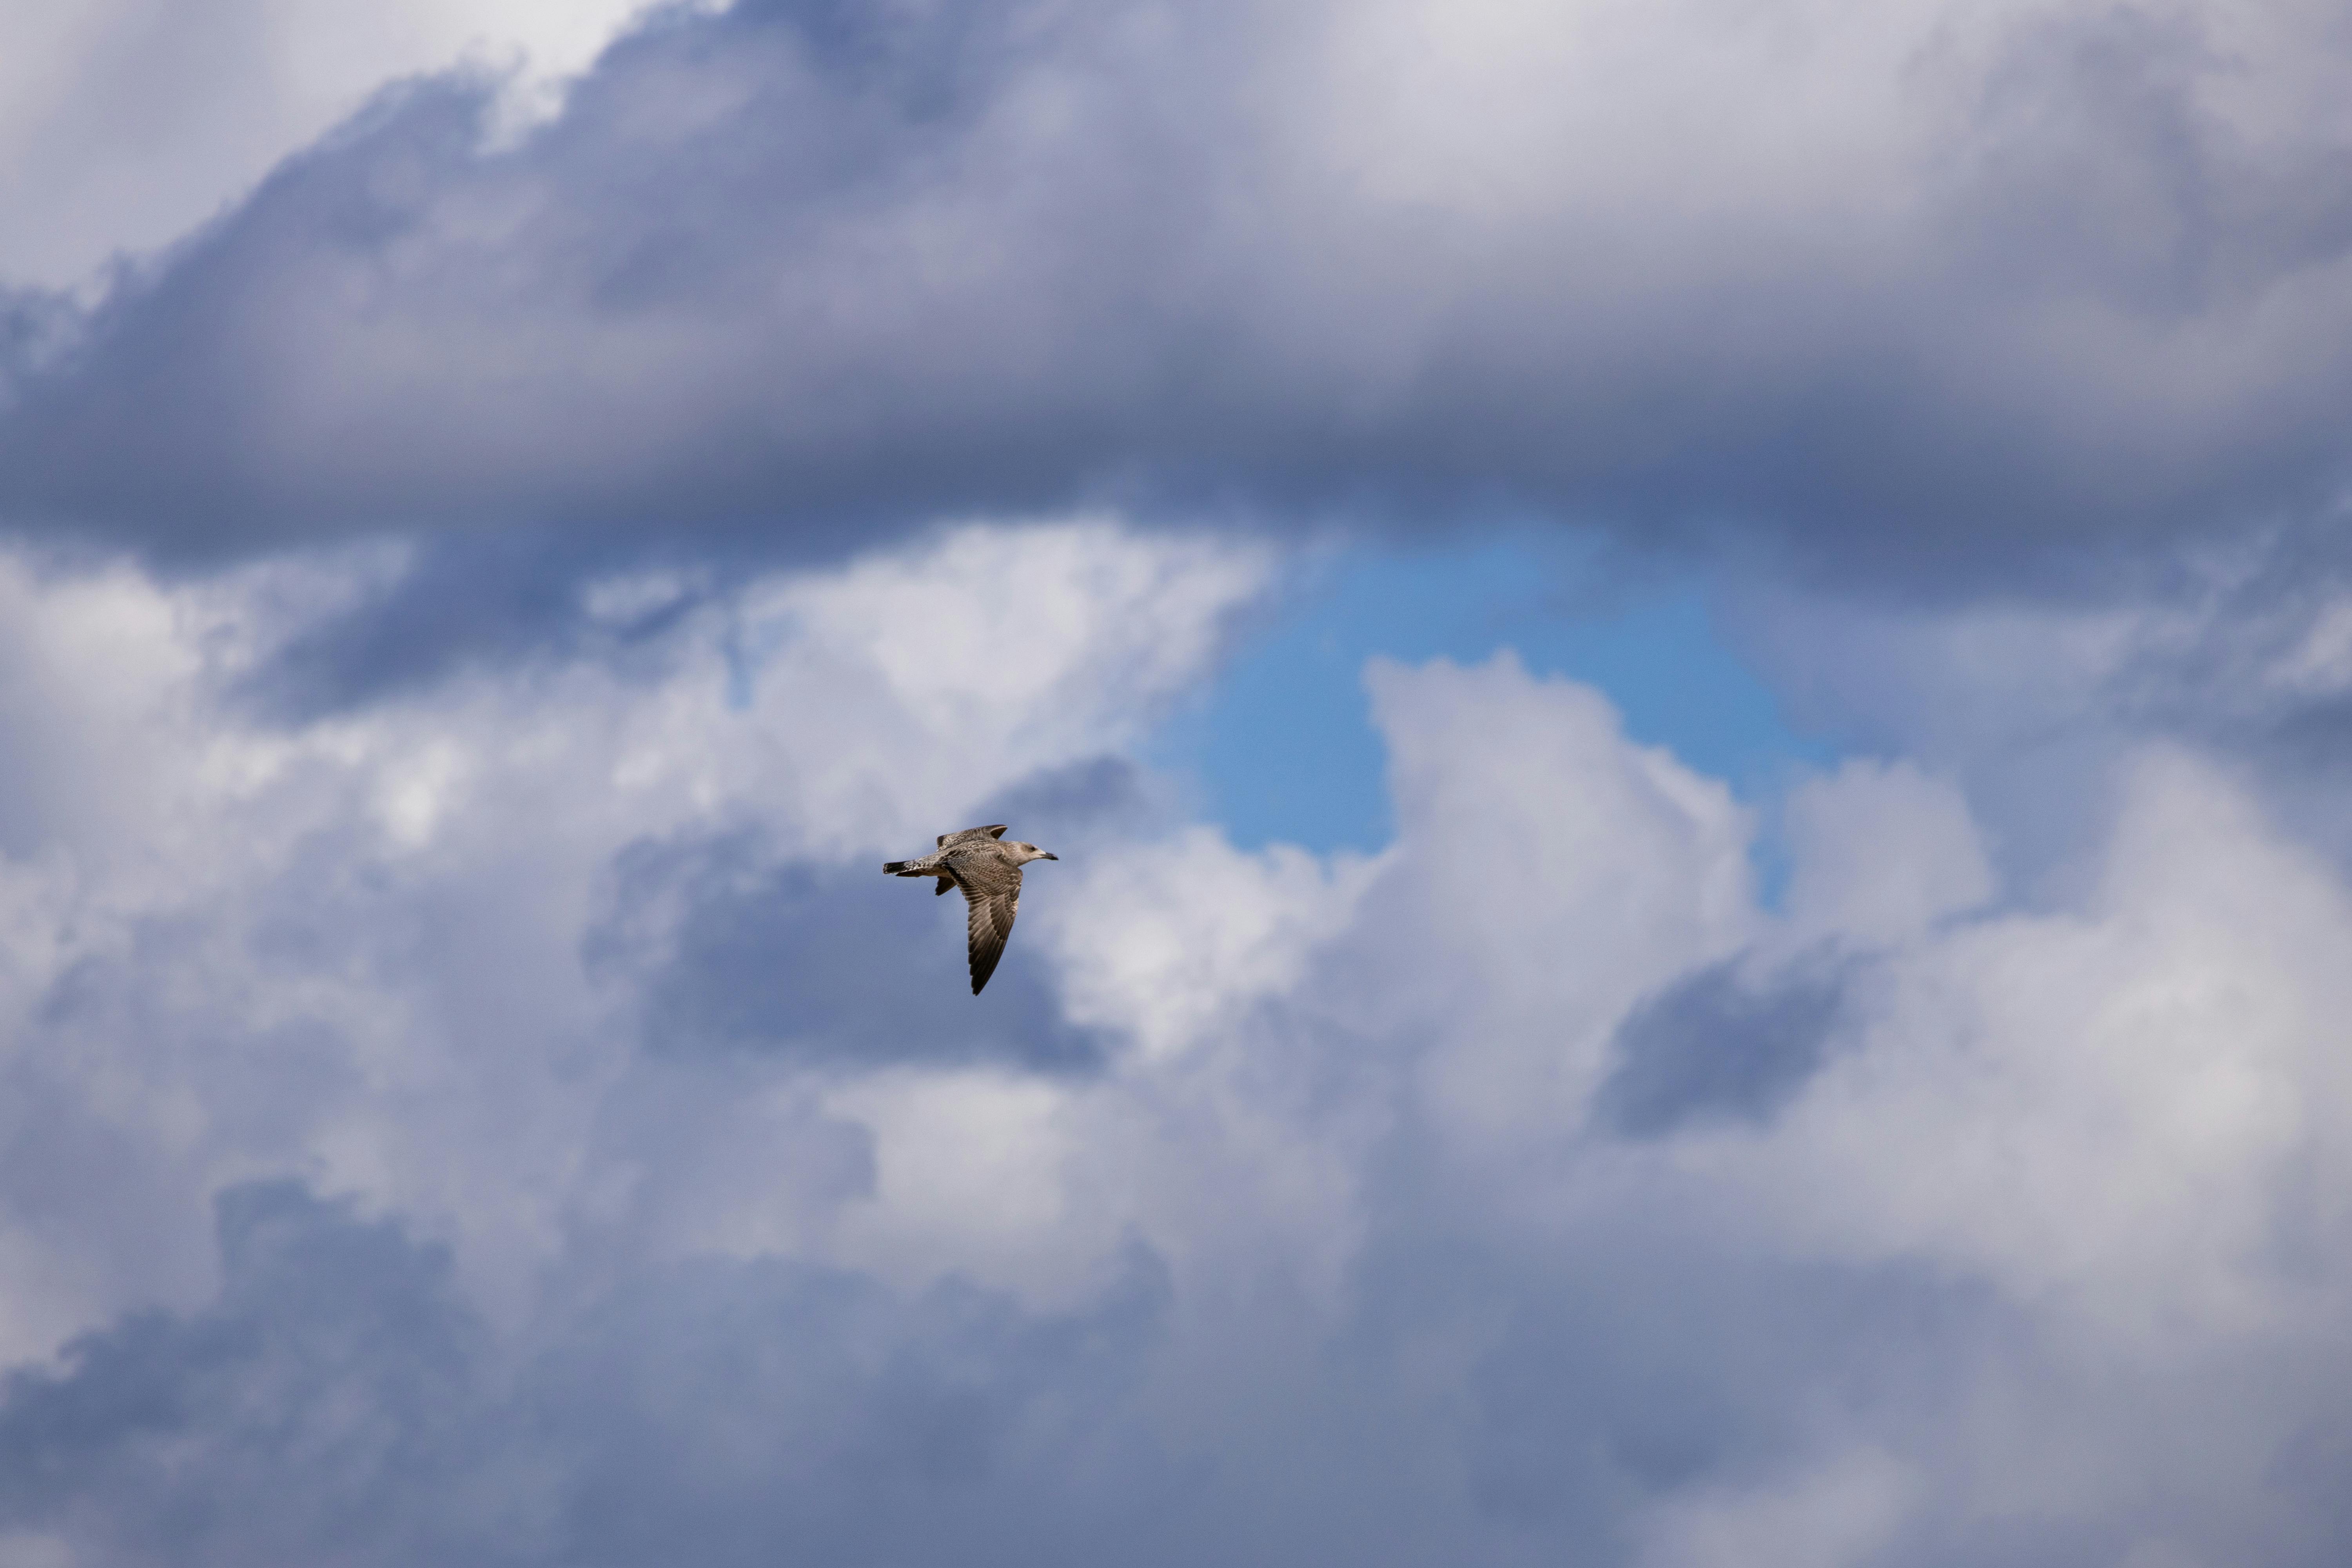 Homebound Flyers: Top Domestic Birds For Indoor Flight